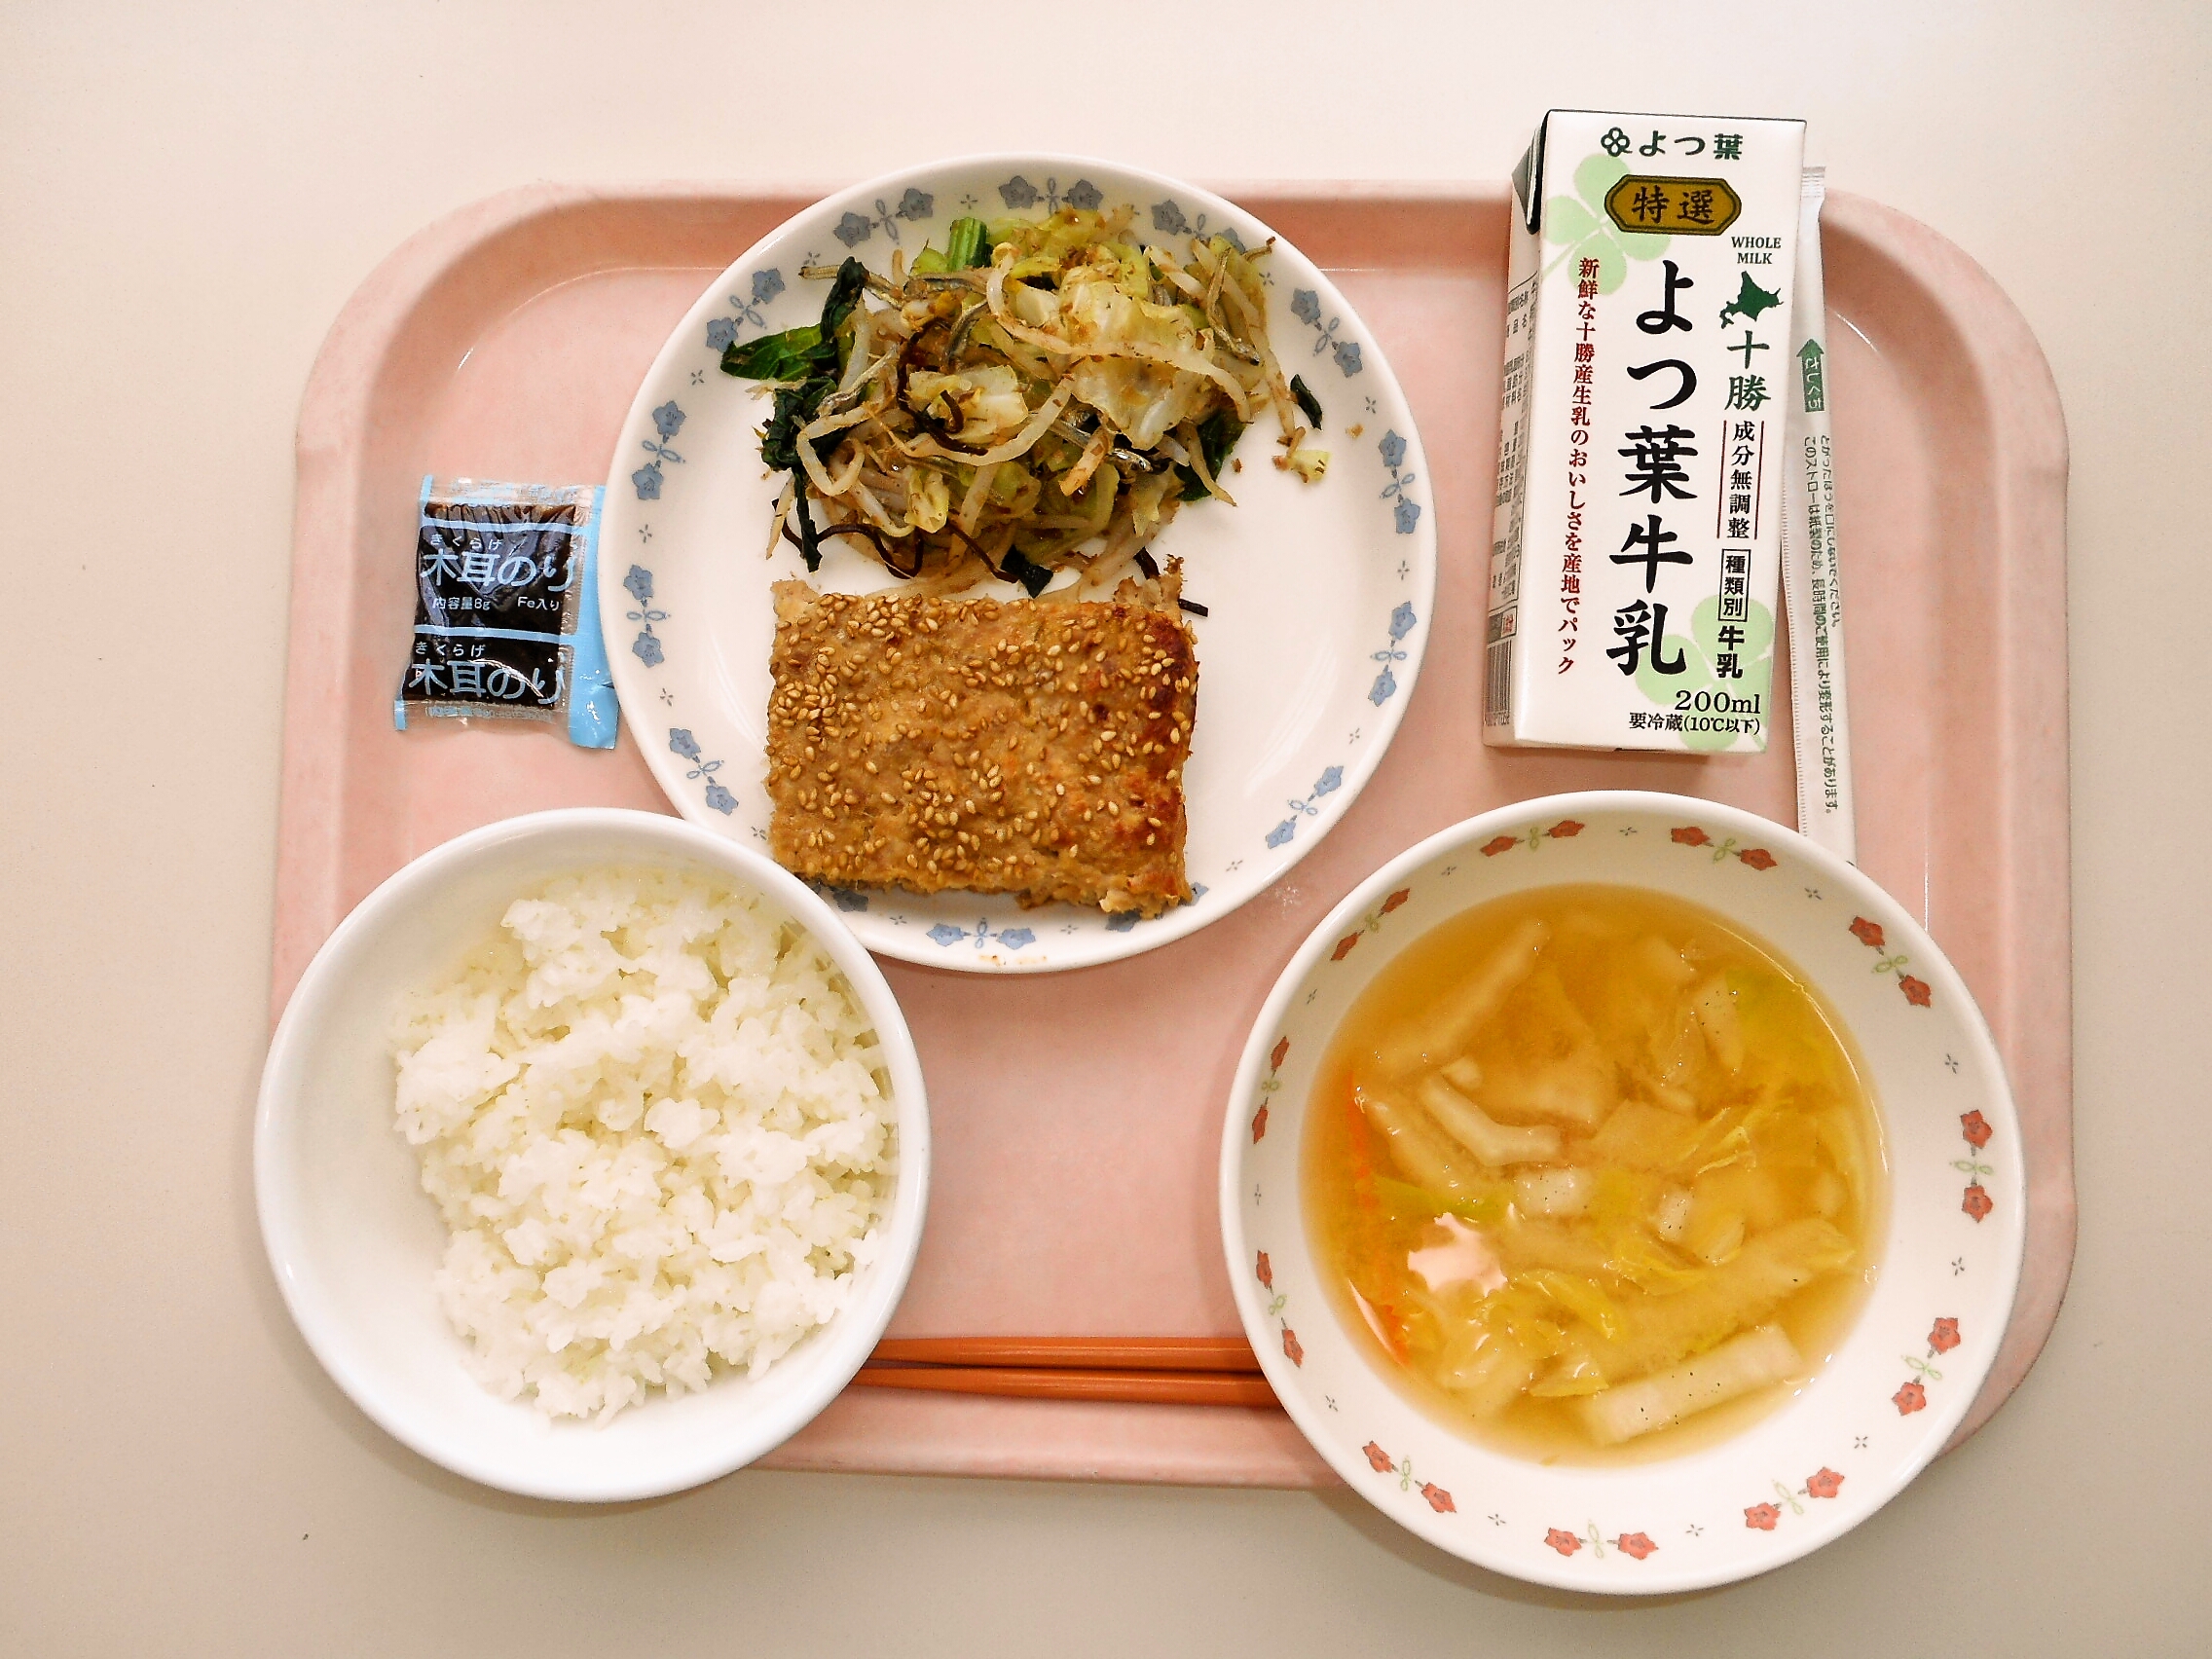 ごはん／のり佃煮、みそ汁（白菜・人参）、松風焼き 、変わりおひたし、牛乳